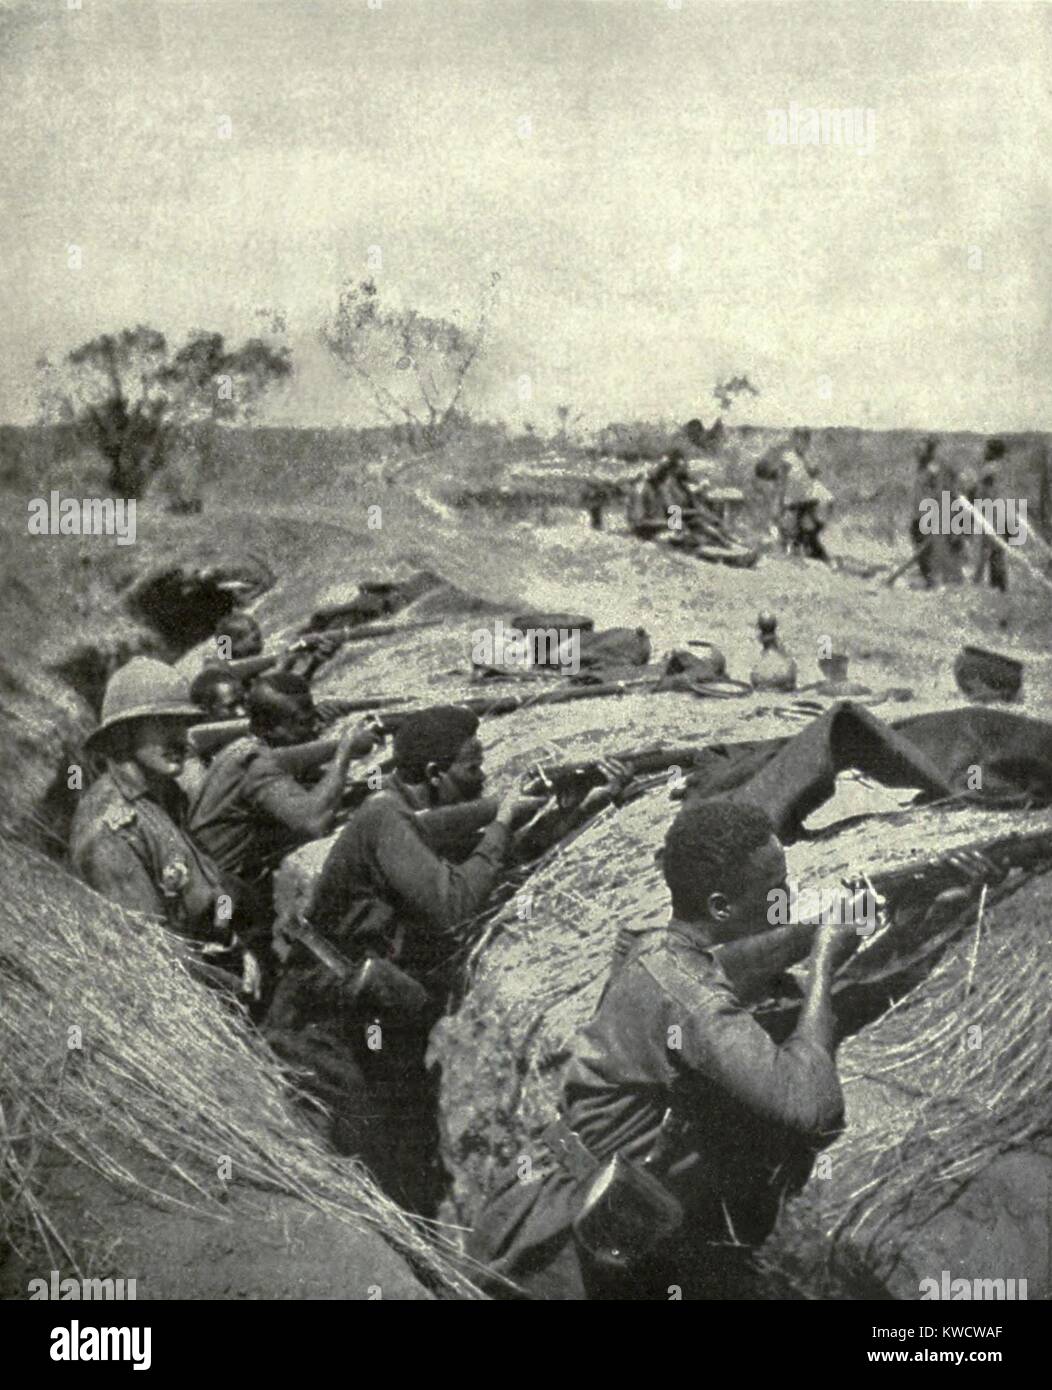 La primera guerra mundial en África. Las tropas africanas en un campo atrincherado en la práctica del rifle. Están entrenados para usar armas modernas por fuerzas africanas británicas bajo el mando del General Van de Venter. Ca. 1917. (BSLOC 2013 1 47) Foto de stock